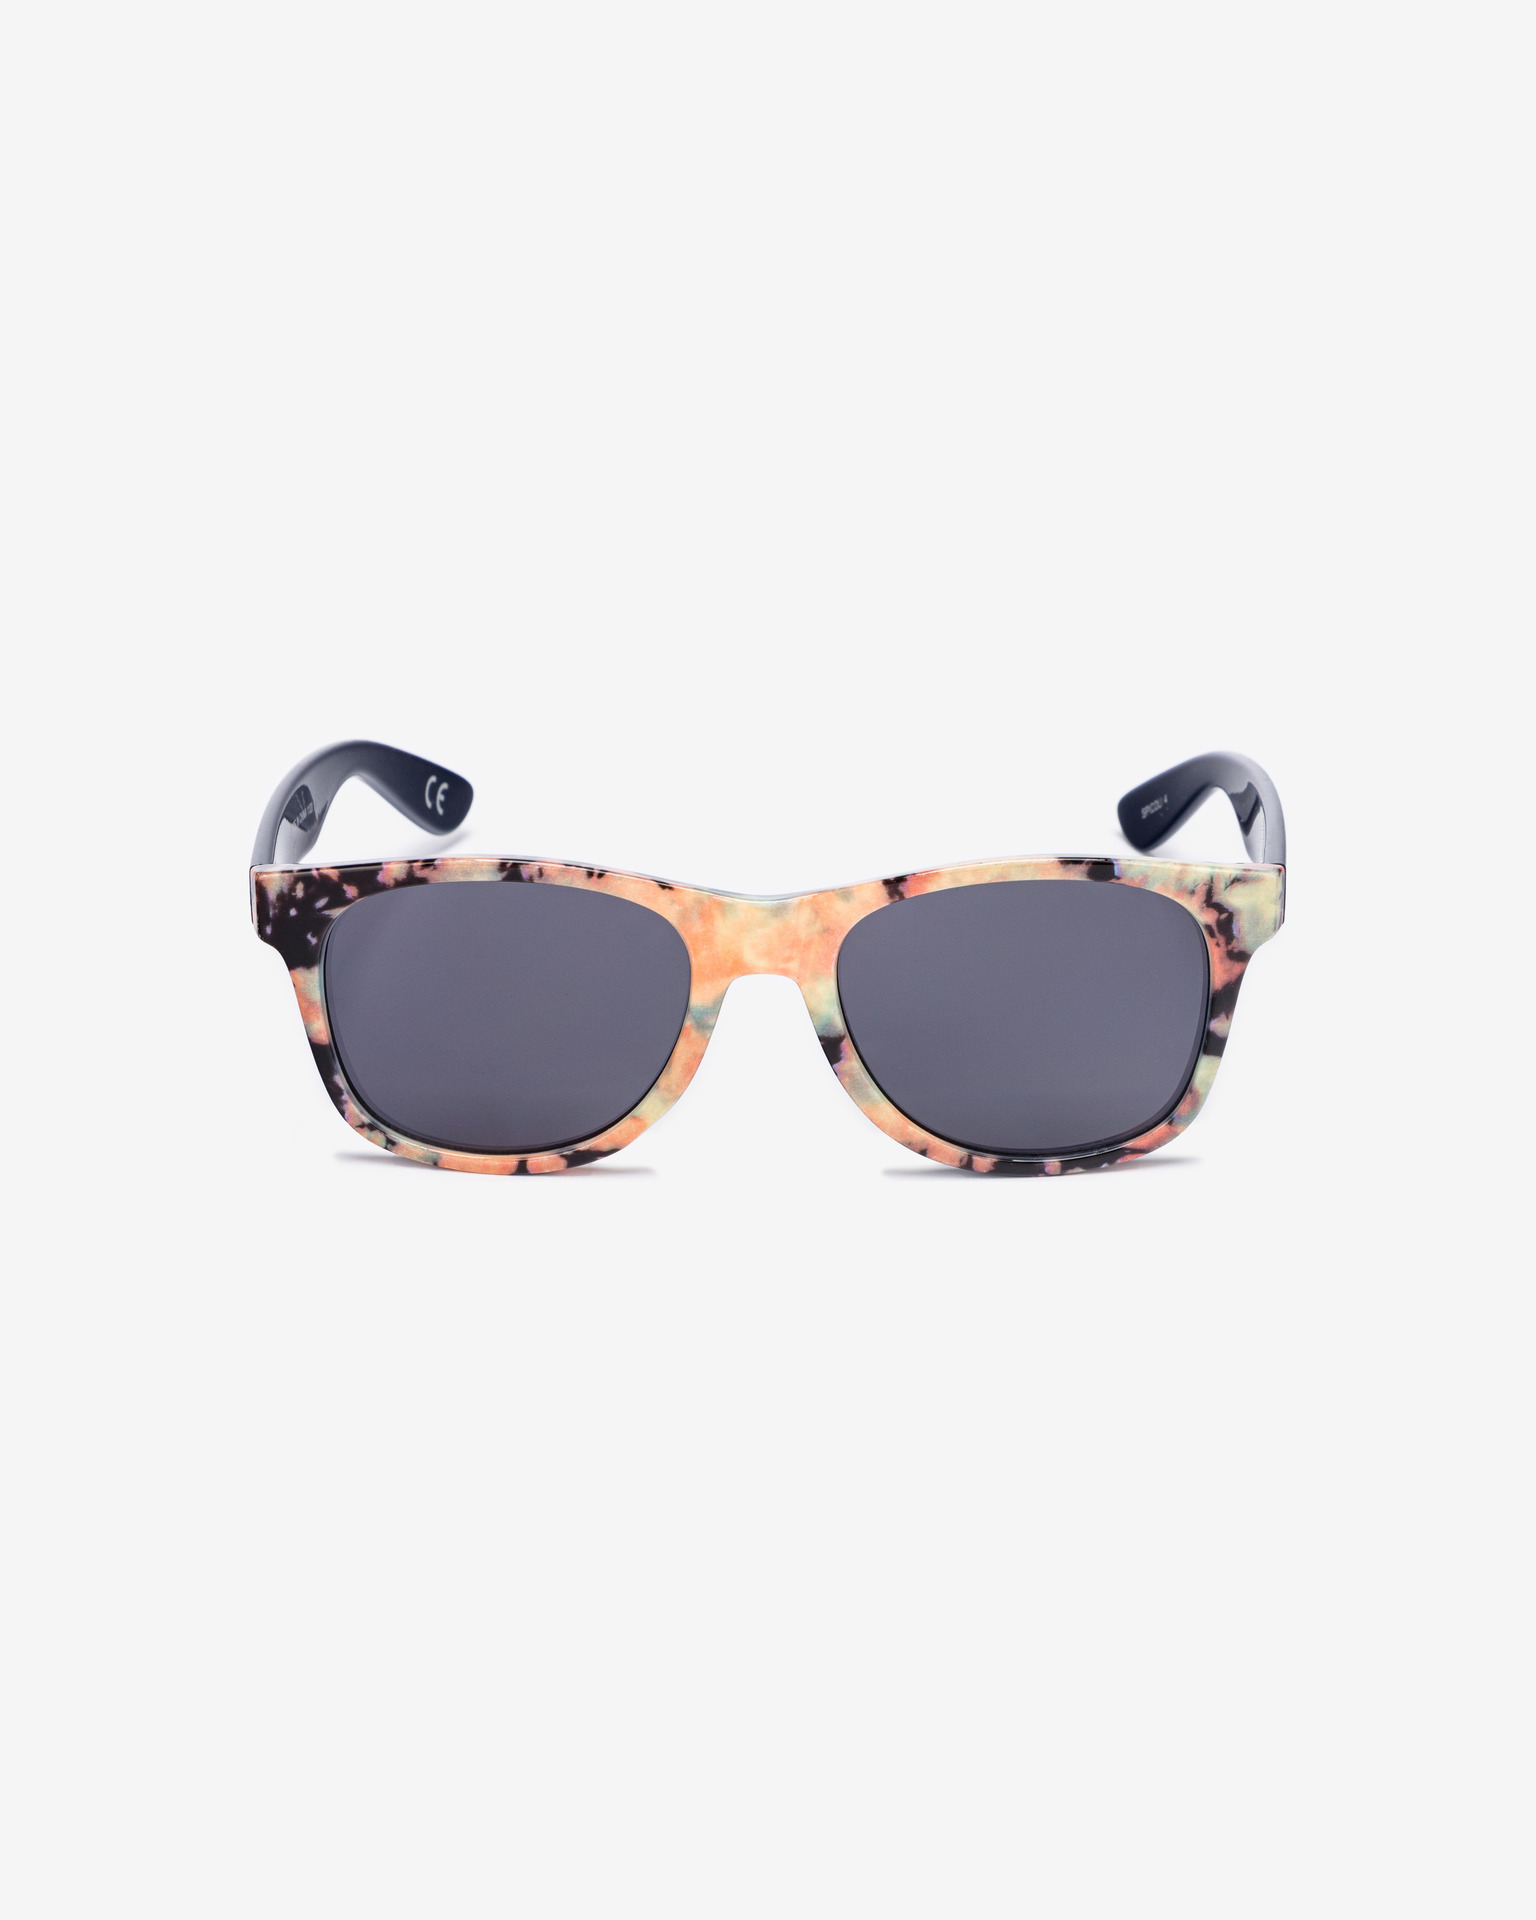 Sunglasses 4 Shades Spicoli Vans -